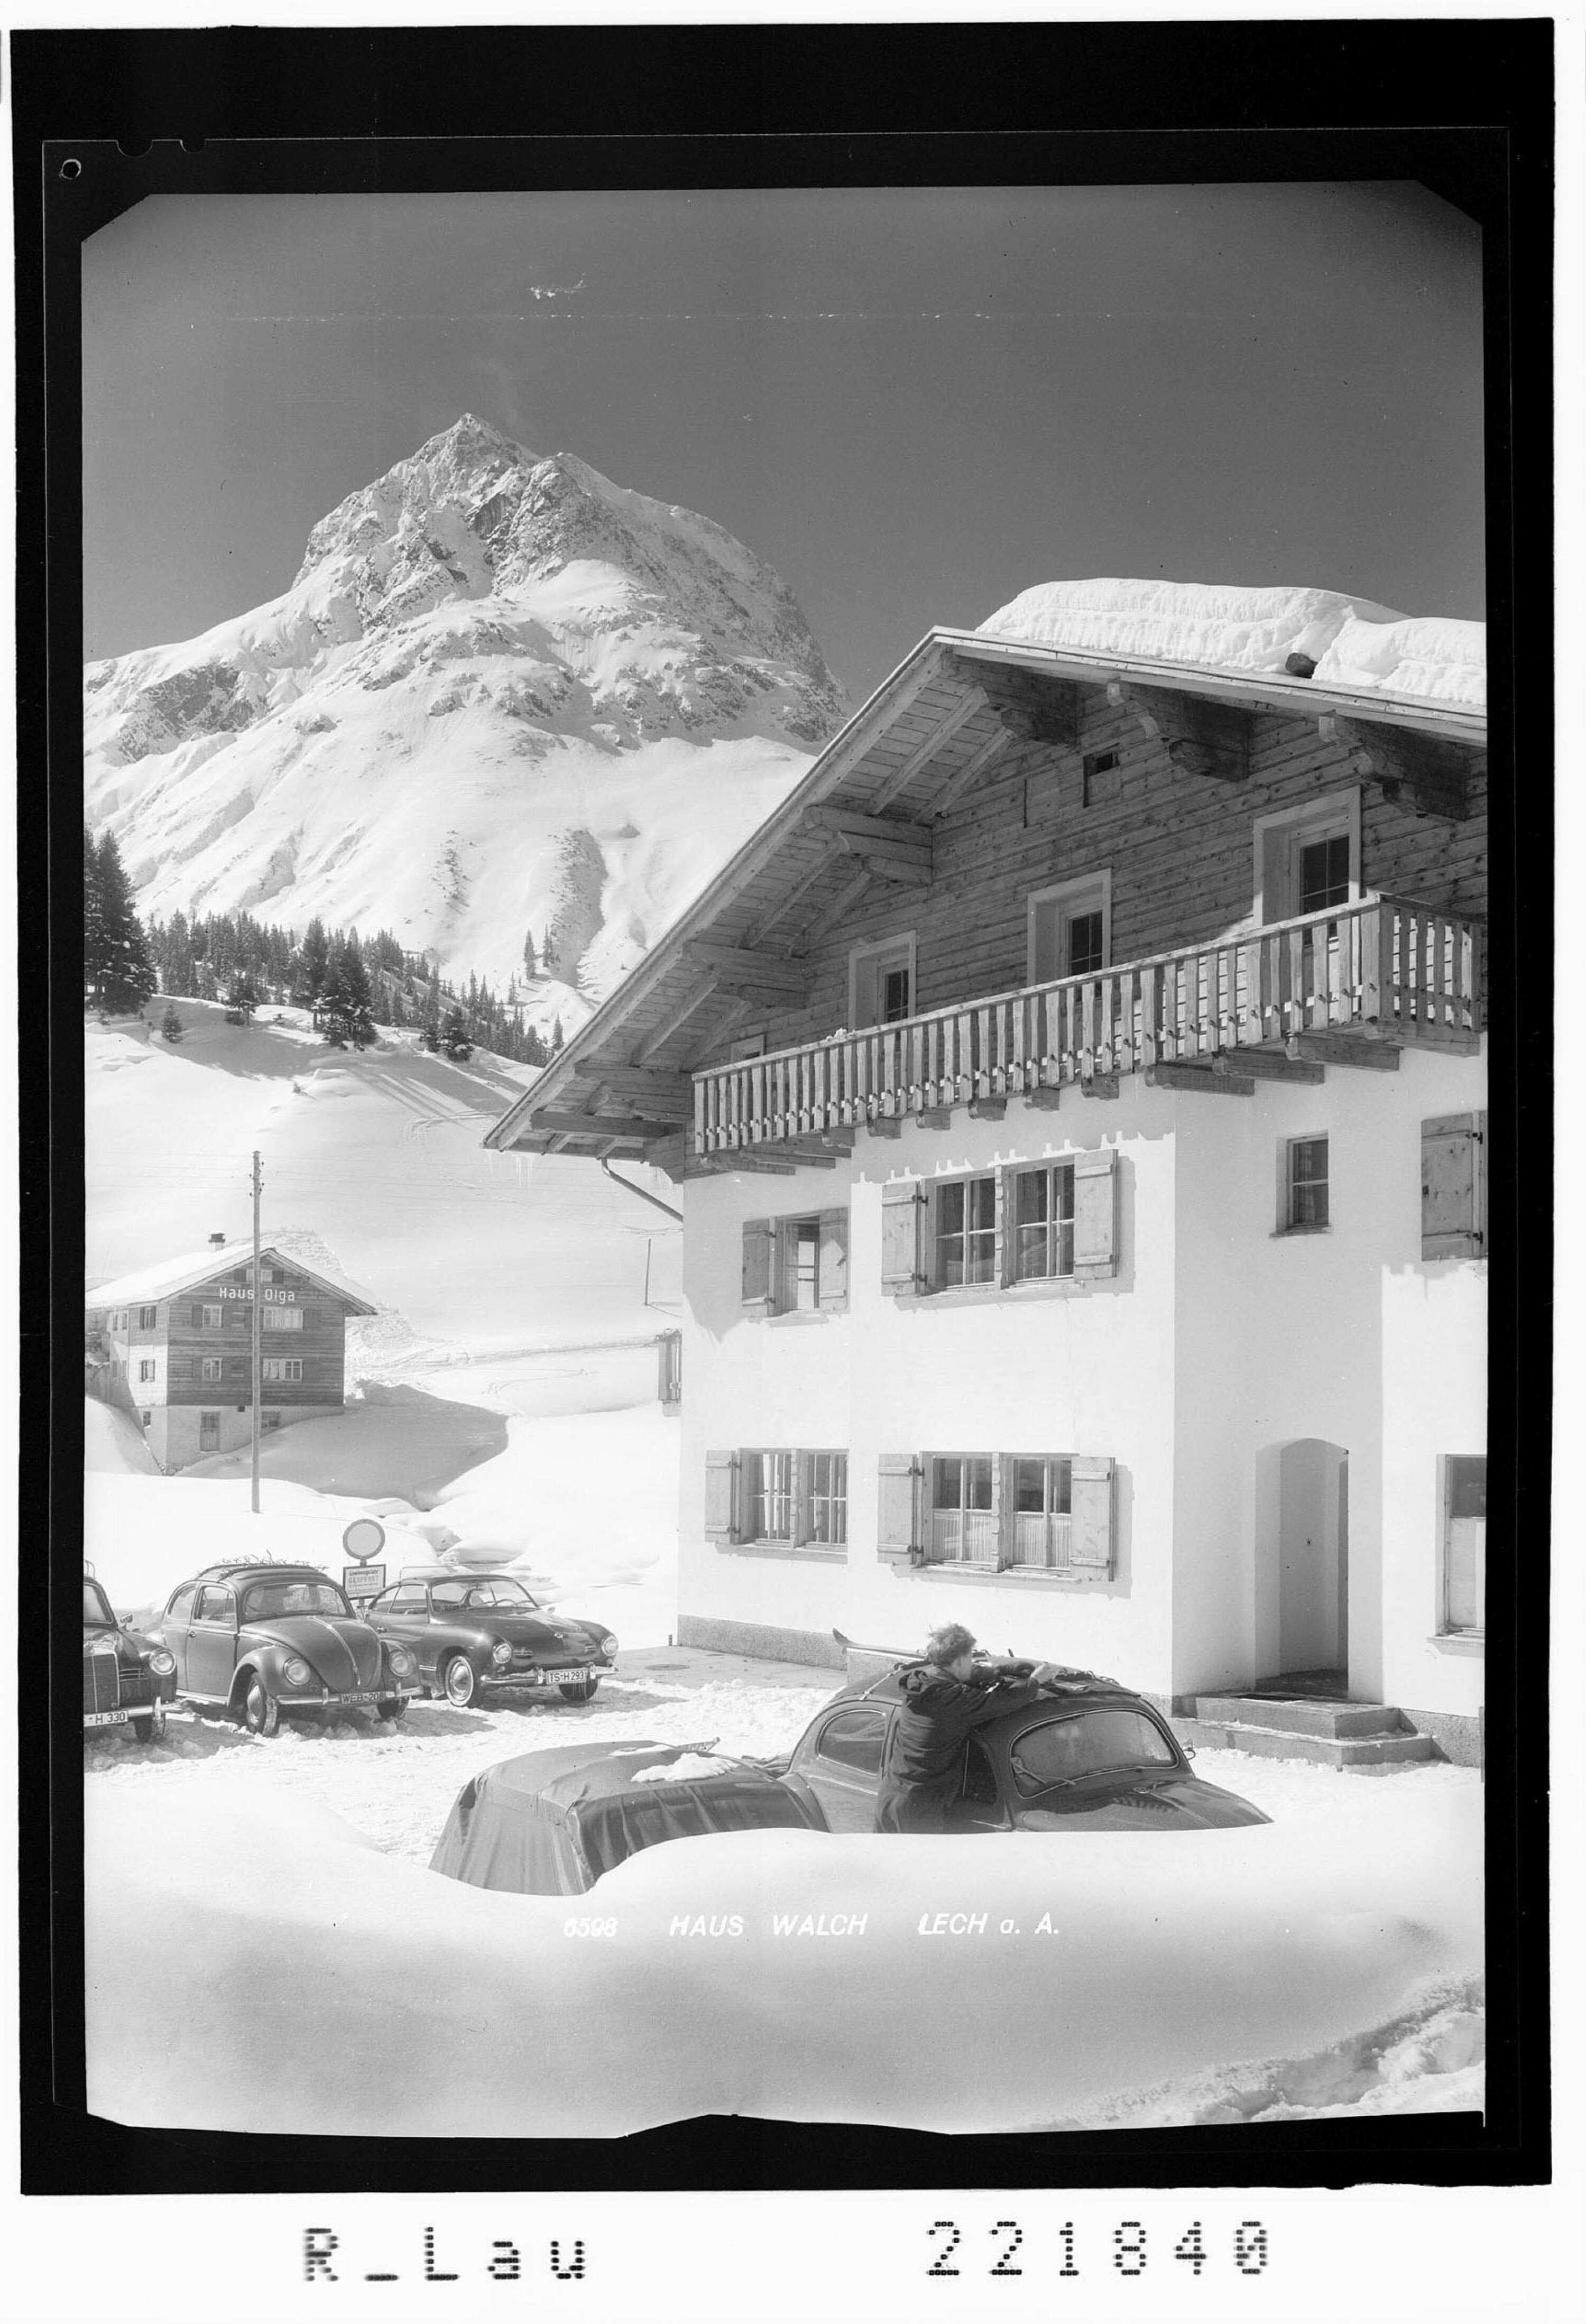 Haus Walch / Lech am Arlberg></div>


    <hr>
    <div class=